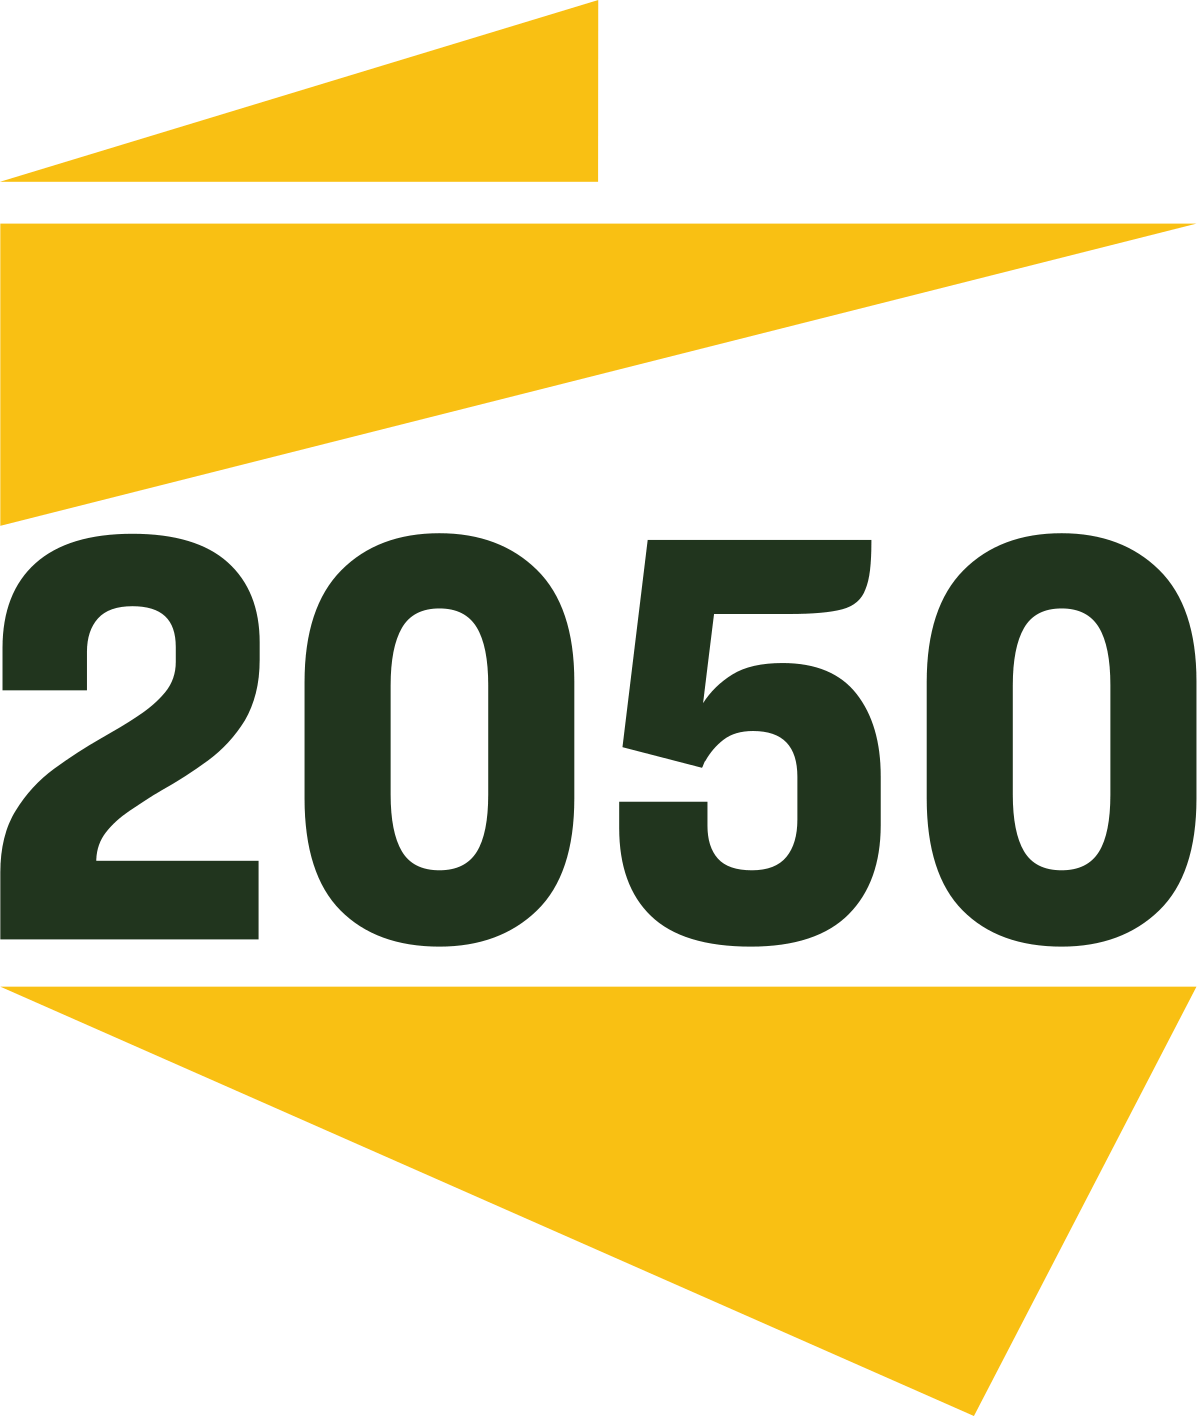 Polska 2050 logo